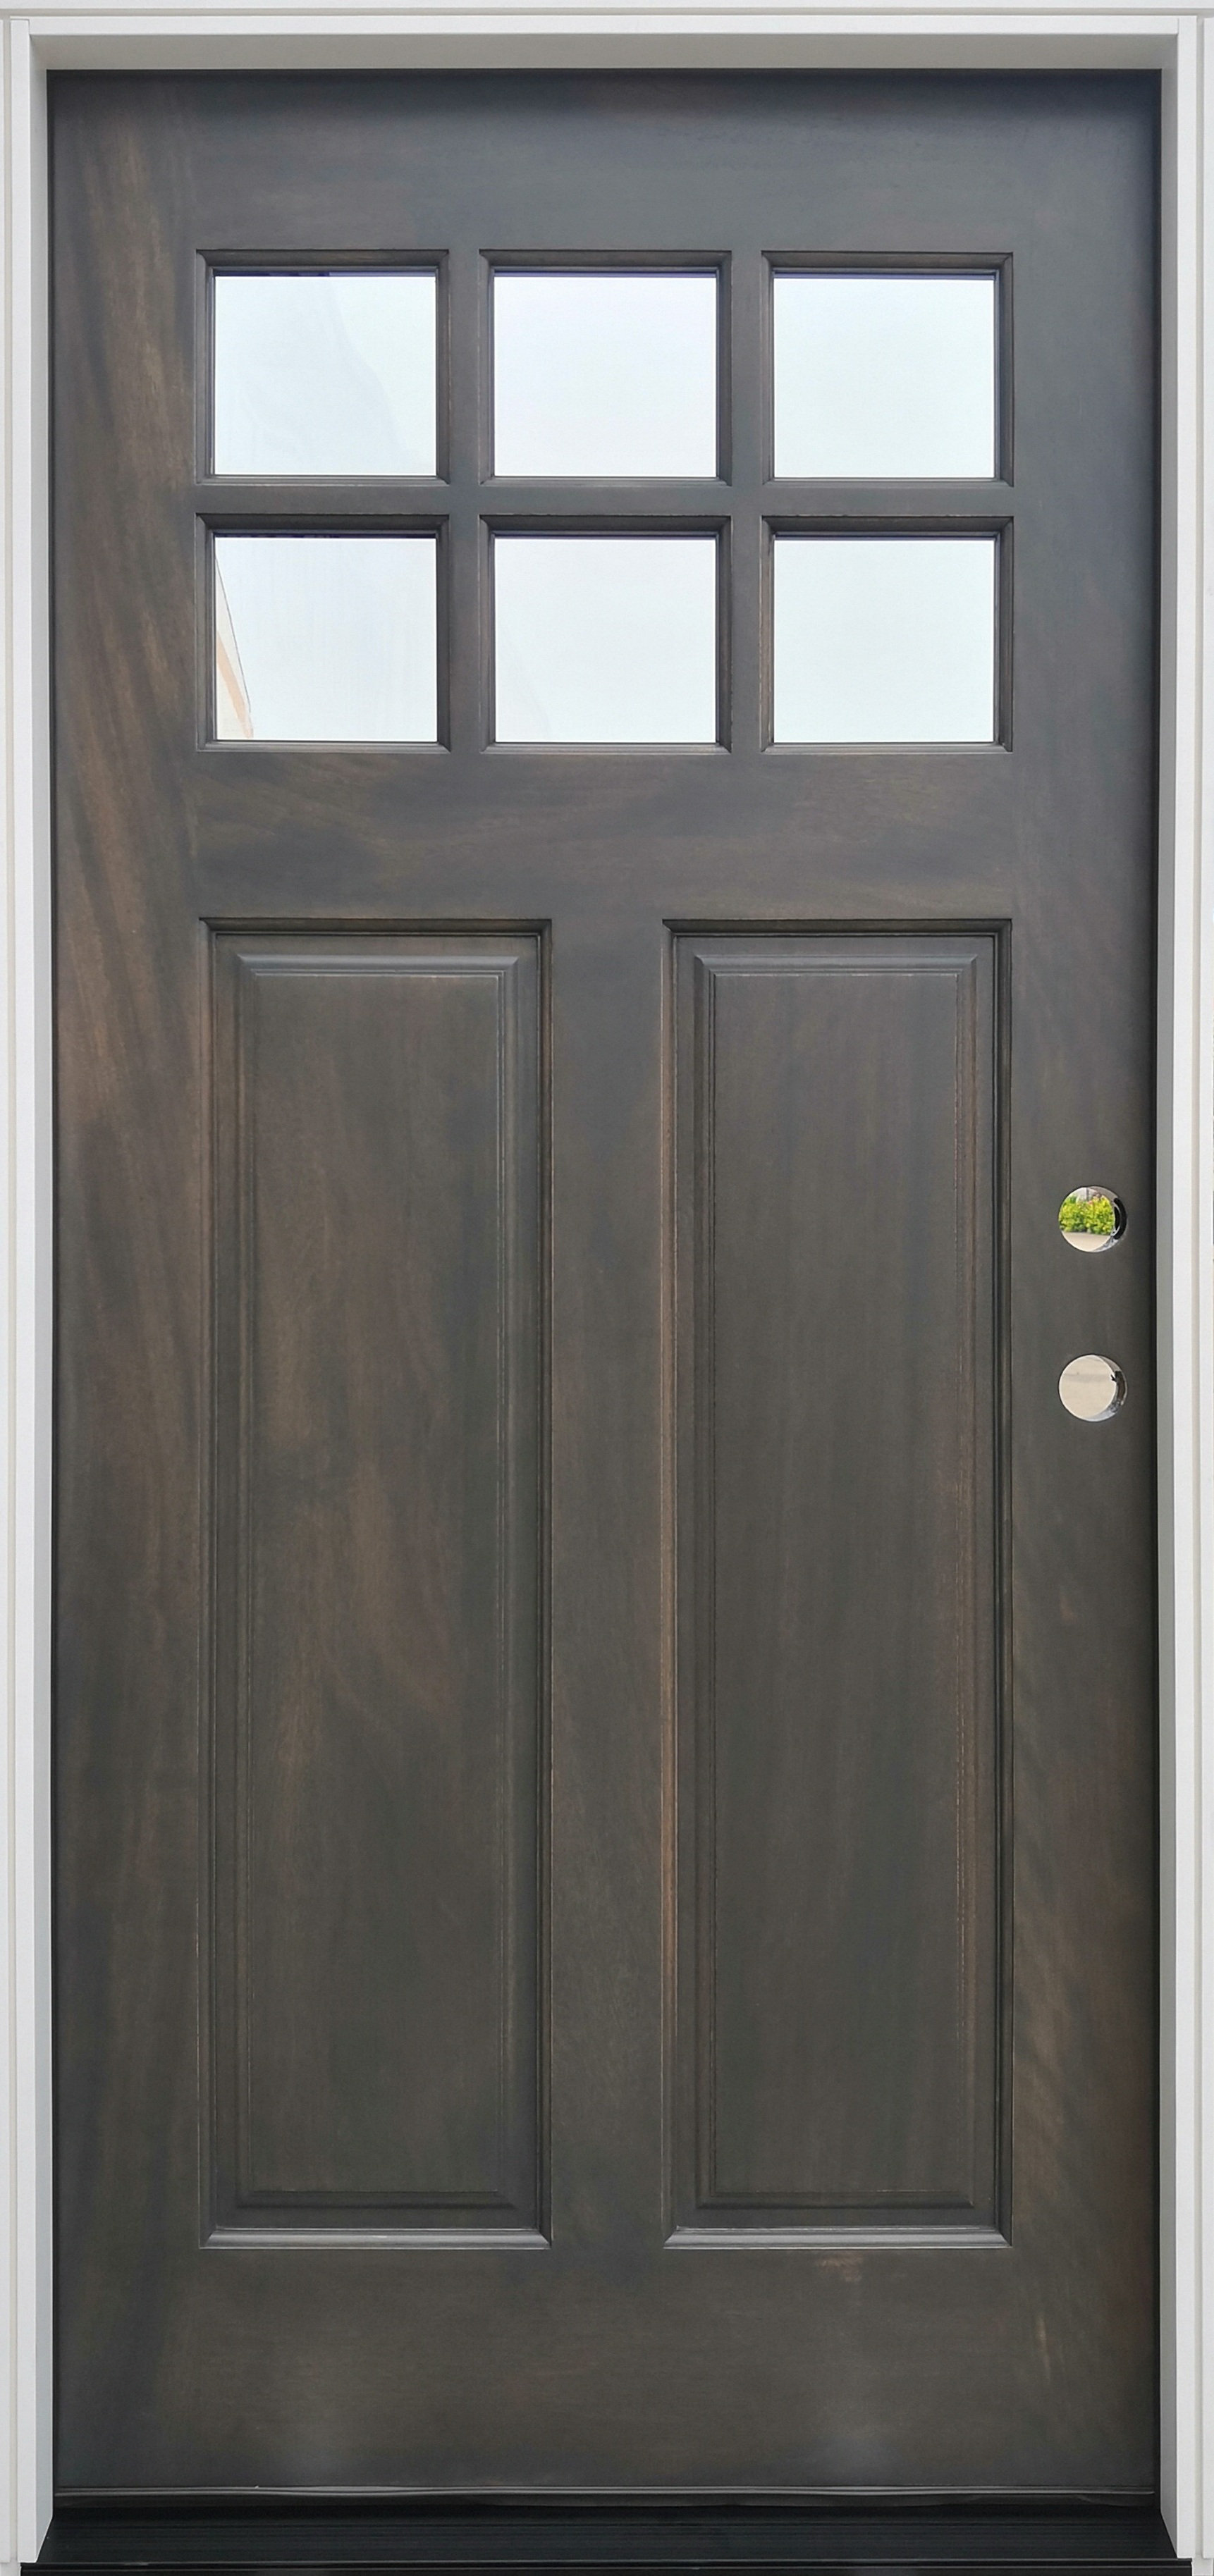 https://assets.wfcdn.com/im/47835980/compr-r85/2024/202435493/3775-x-815-glass-wood-front-entry-doors.jpg